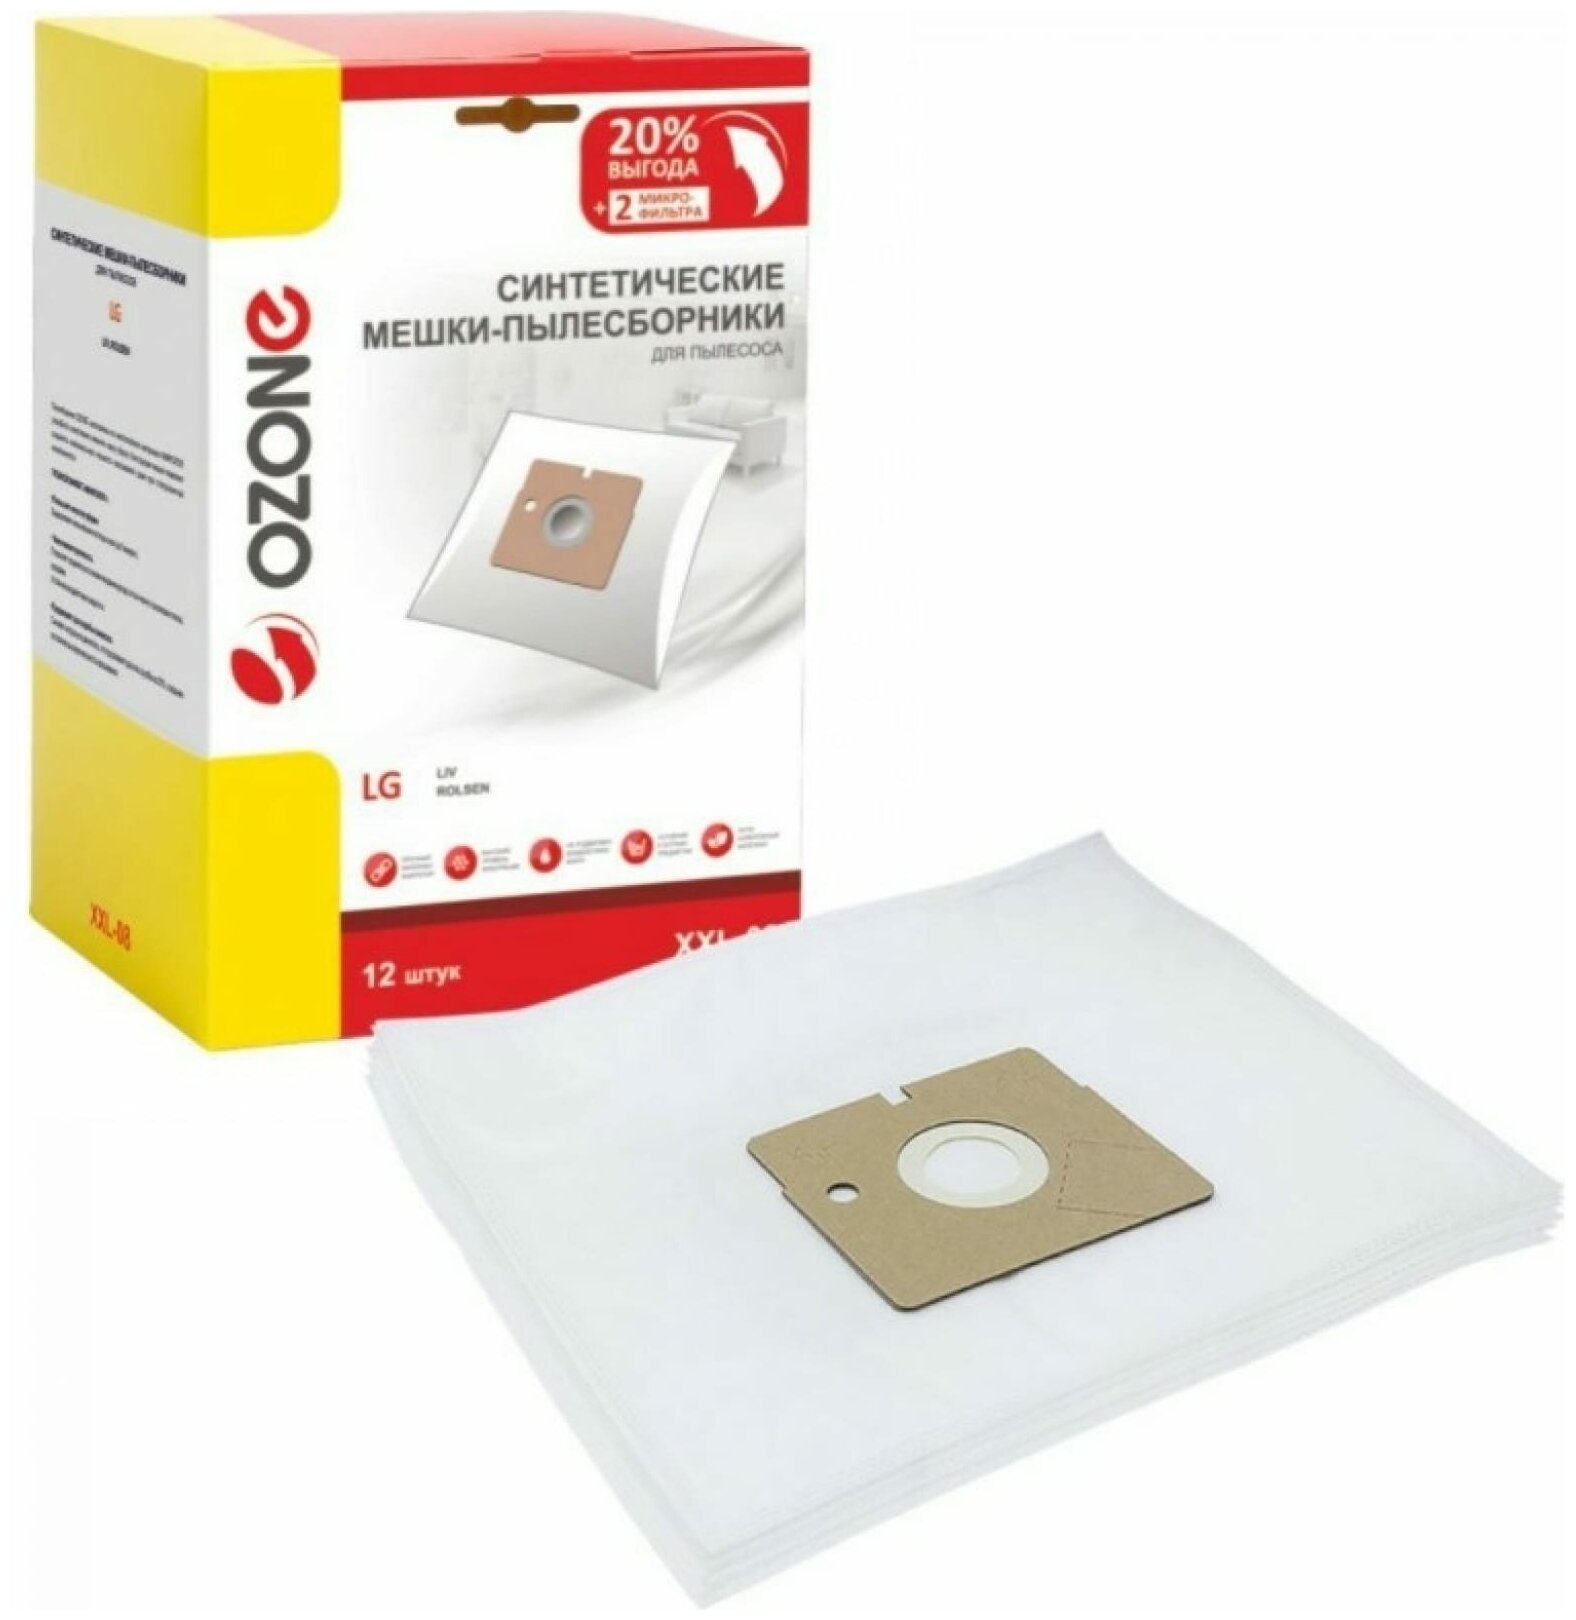 Мешки-пылесборники Ozone XXL-08 синтетические 12 шт + 2 микрофильтра для LG, LIV, ROLSEN